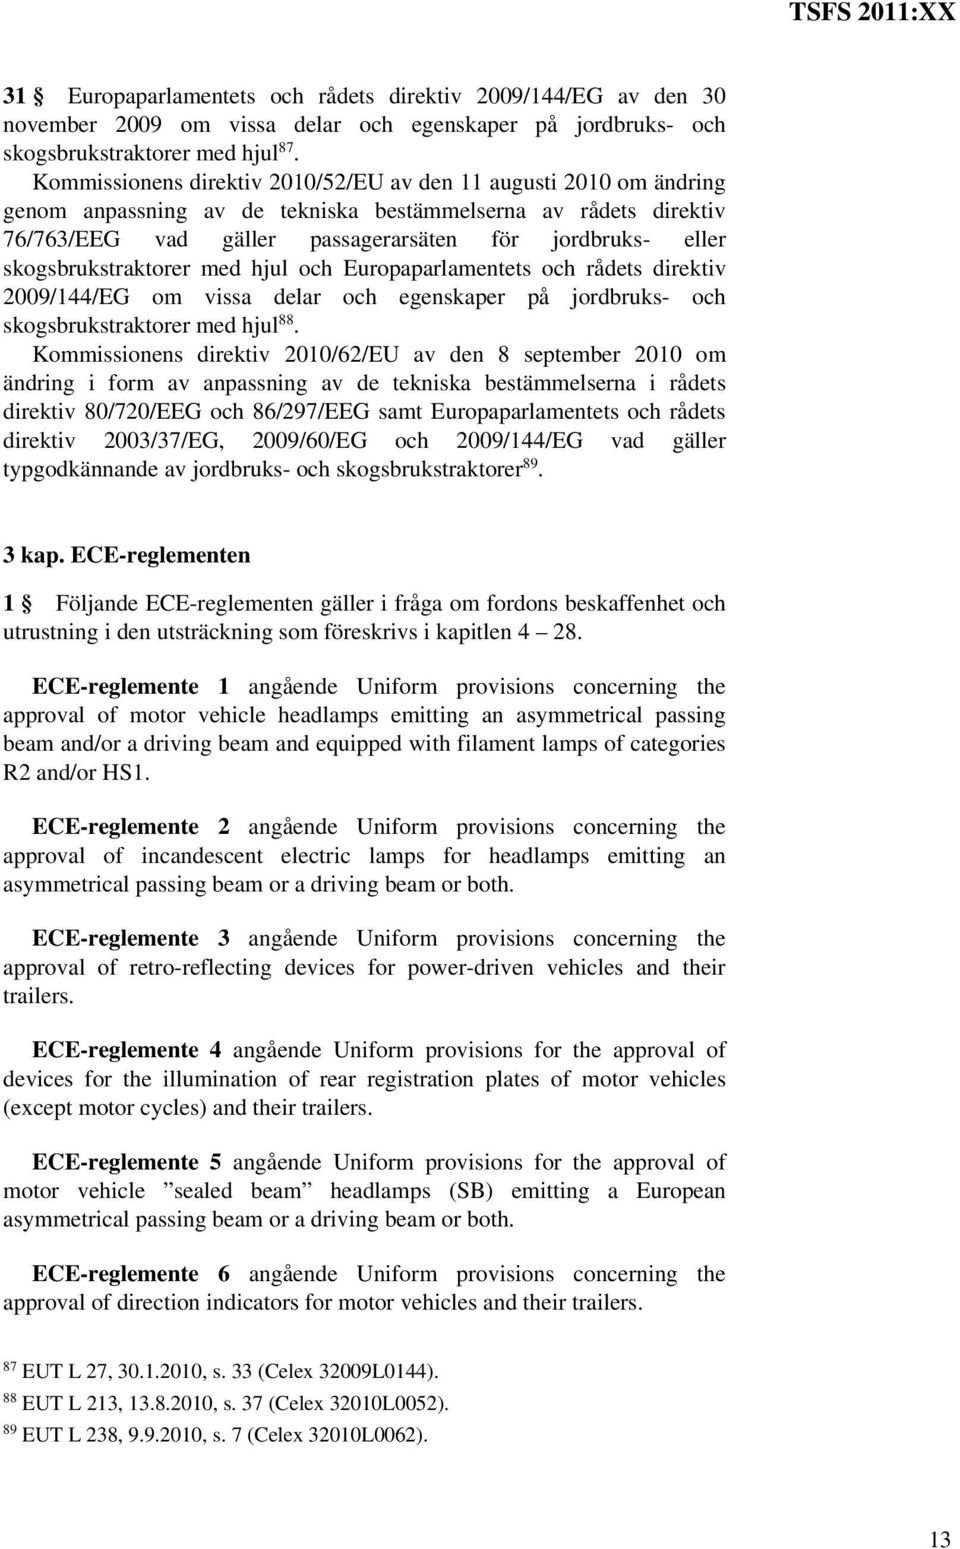 skogsbrukstraktorer med hjul och Europaparlamentets och rådets direktiv 2009/144/EG om vissa delar och egenskaper på jordbruks- och skogsbrukstraktorer med hjul 88.